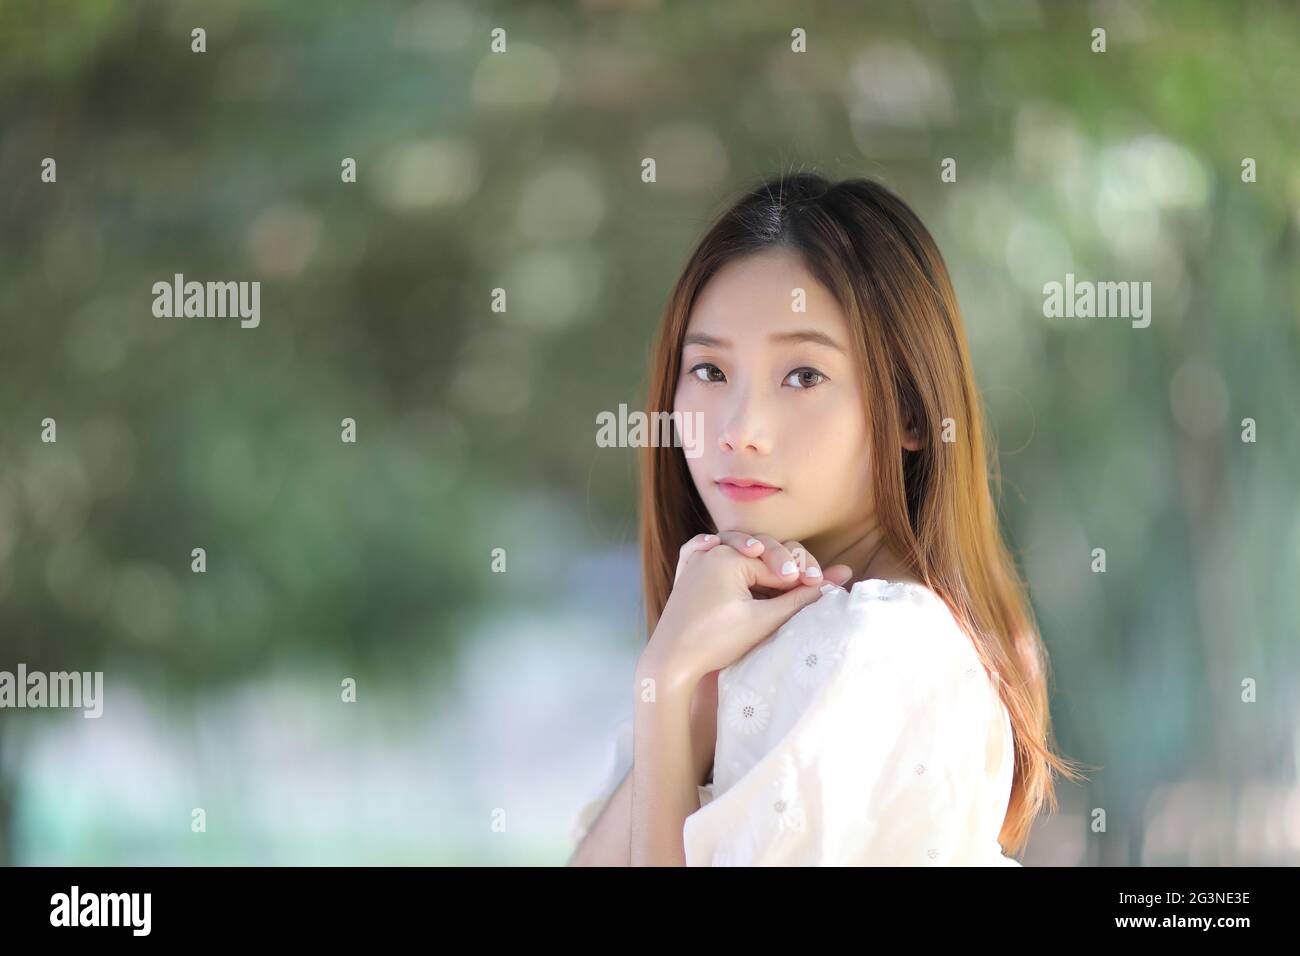 Schöne junge Frau mit weißem Kleid auf Bambus Wald Hintergrund Stockfoto